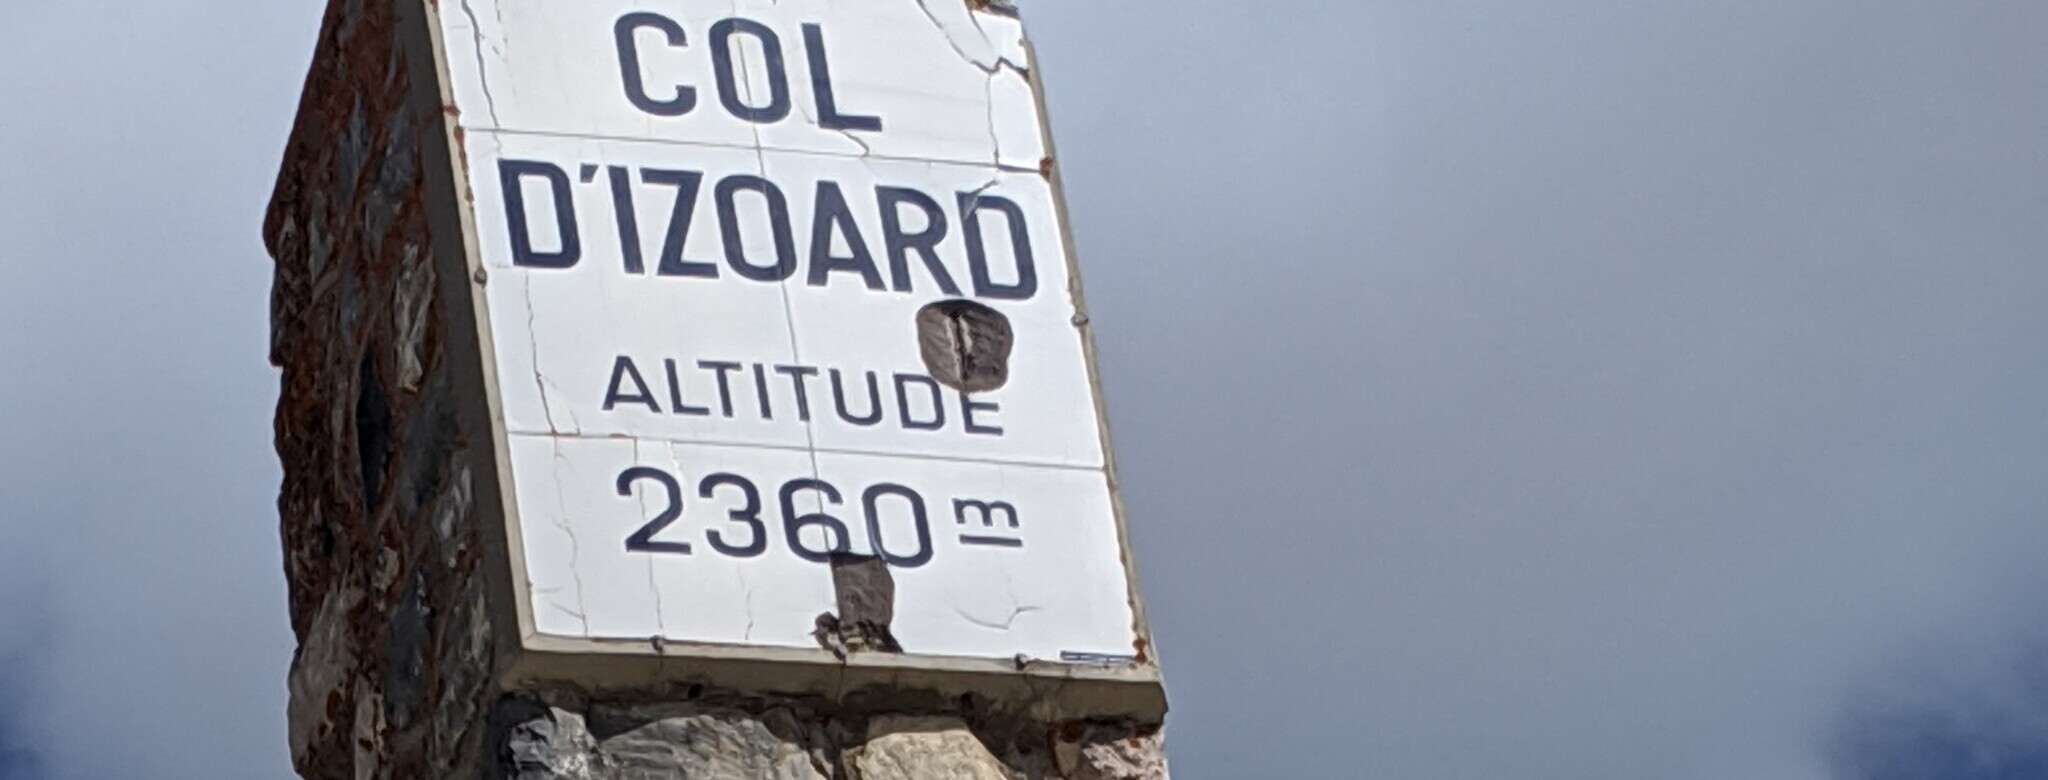 Col d'Izoard.